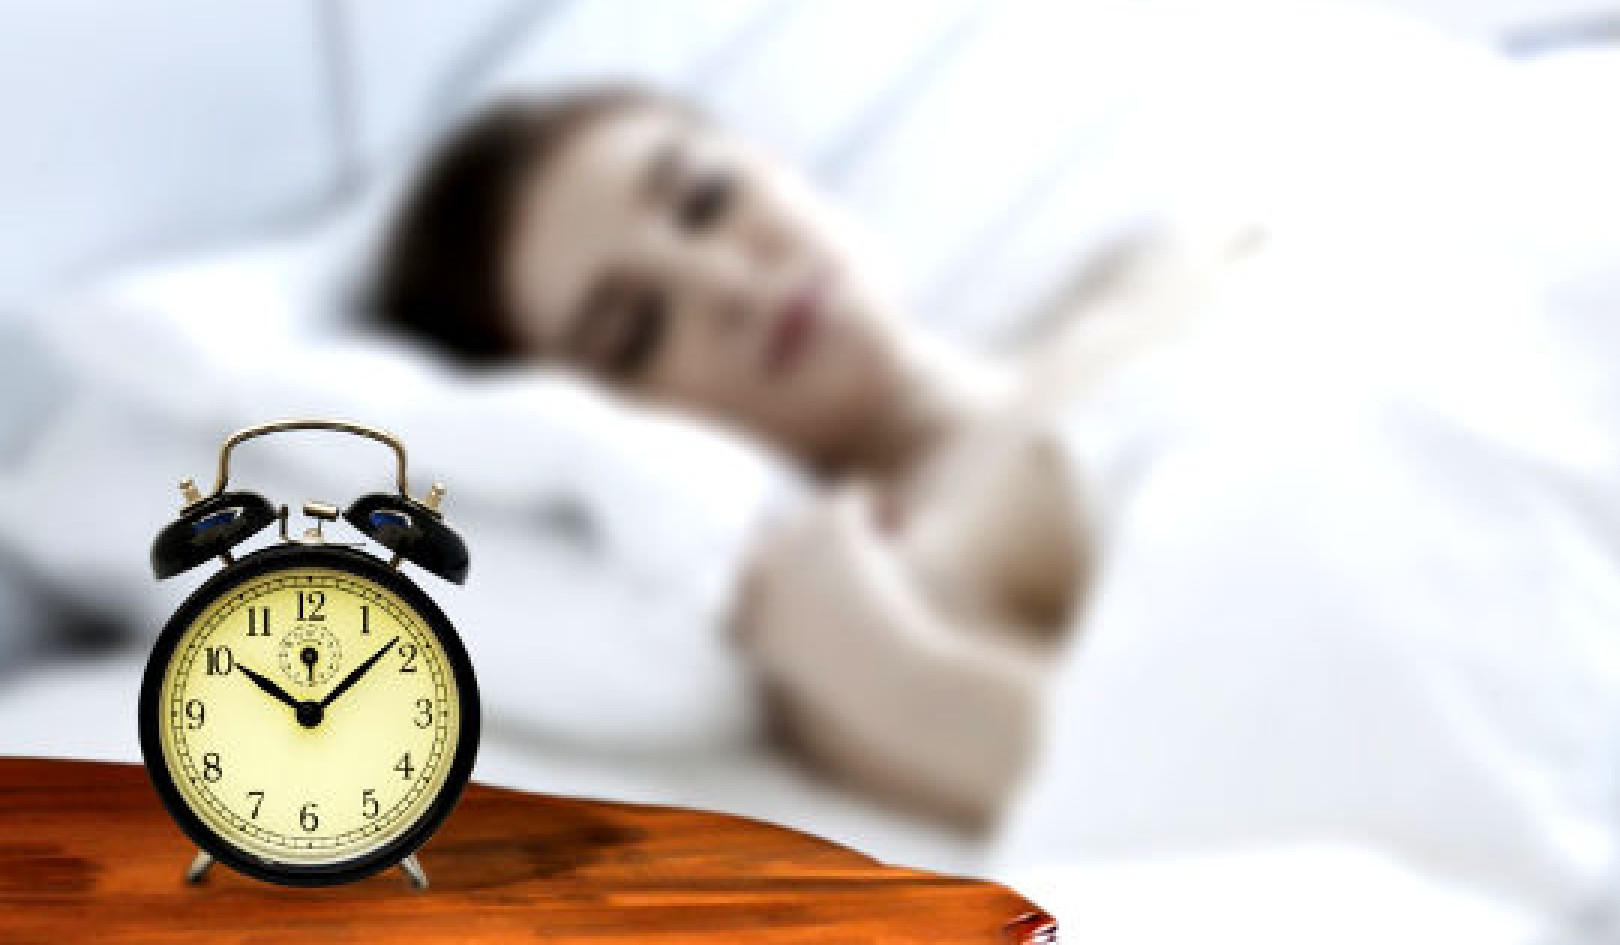 Thời gian để nạp năng lượng: Tối ưu hóa giấc ngủ giúp giảm đau